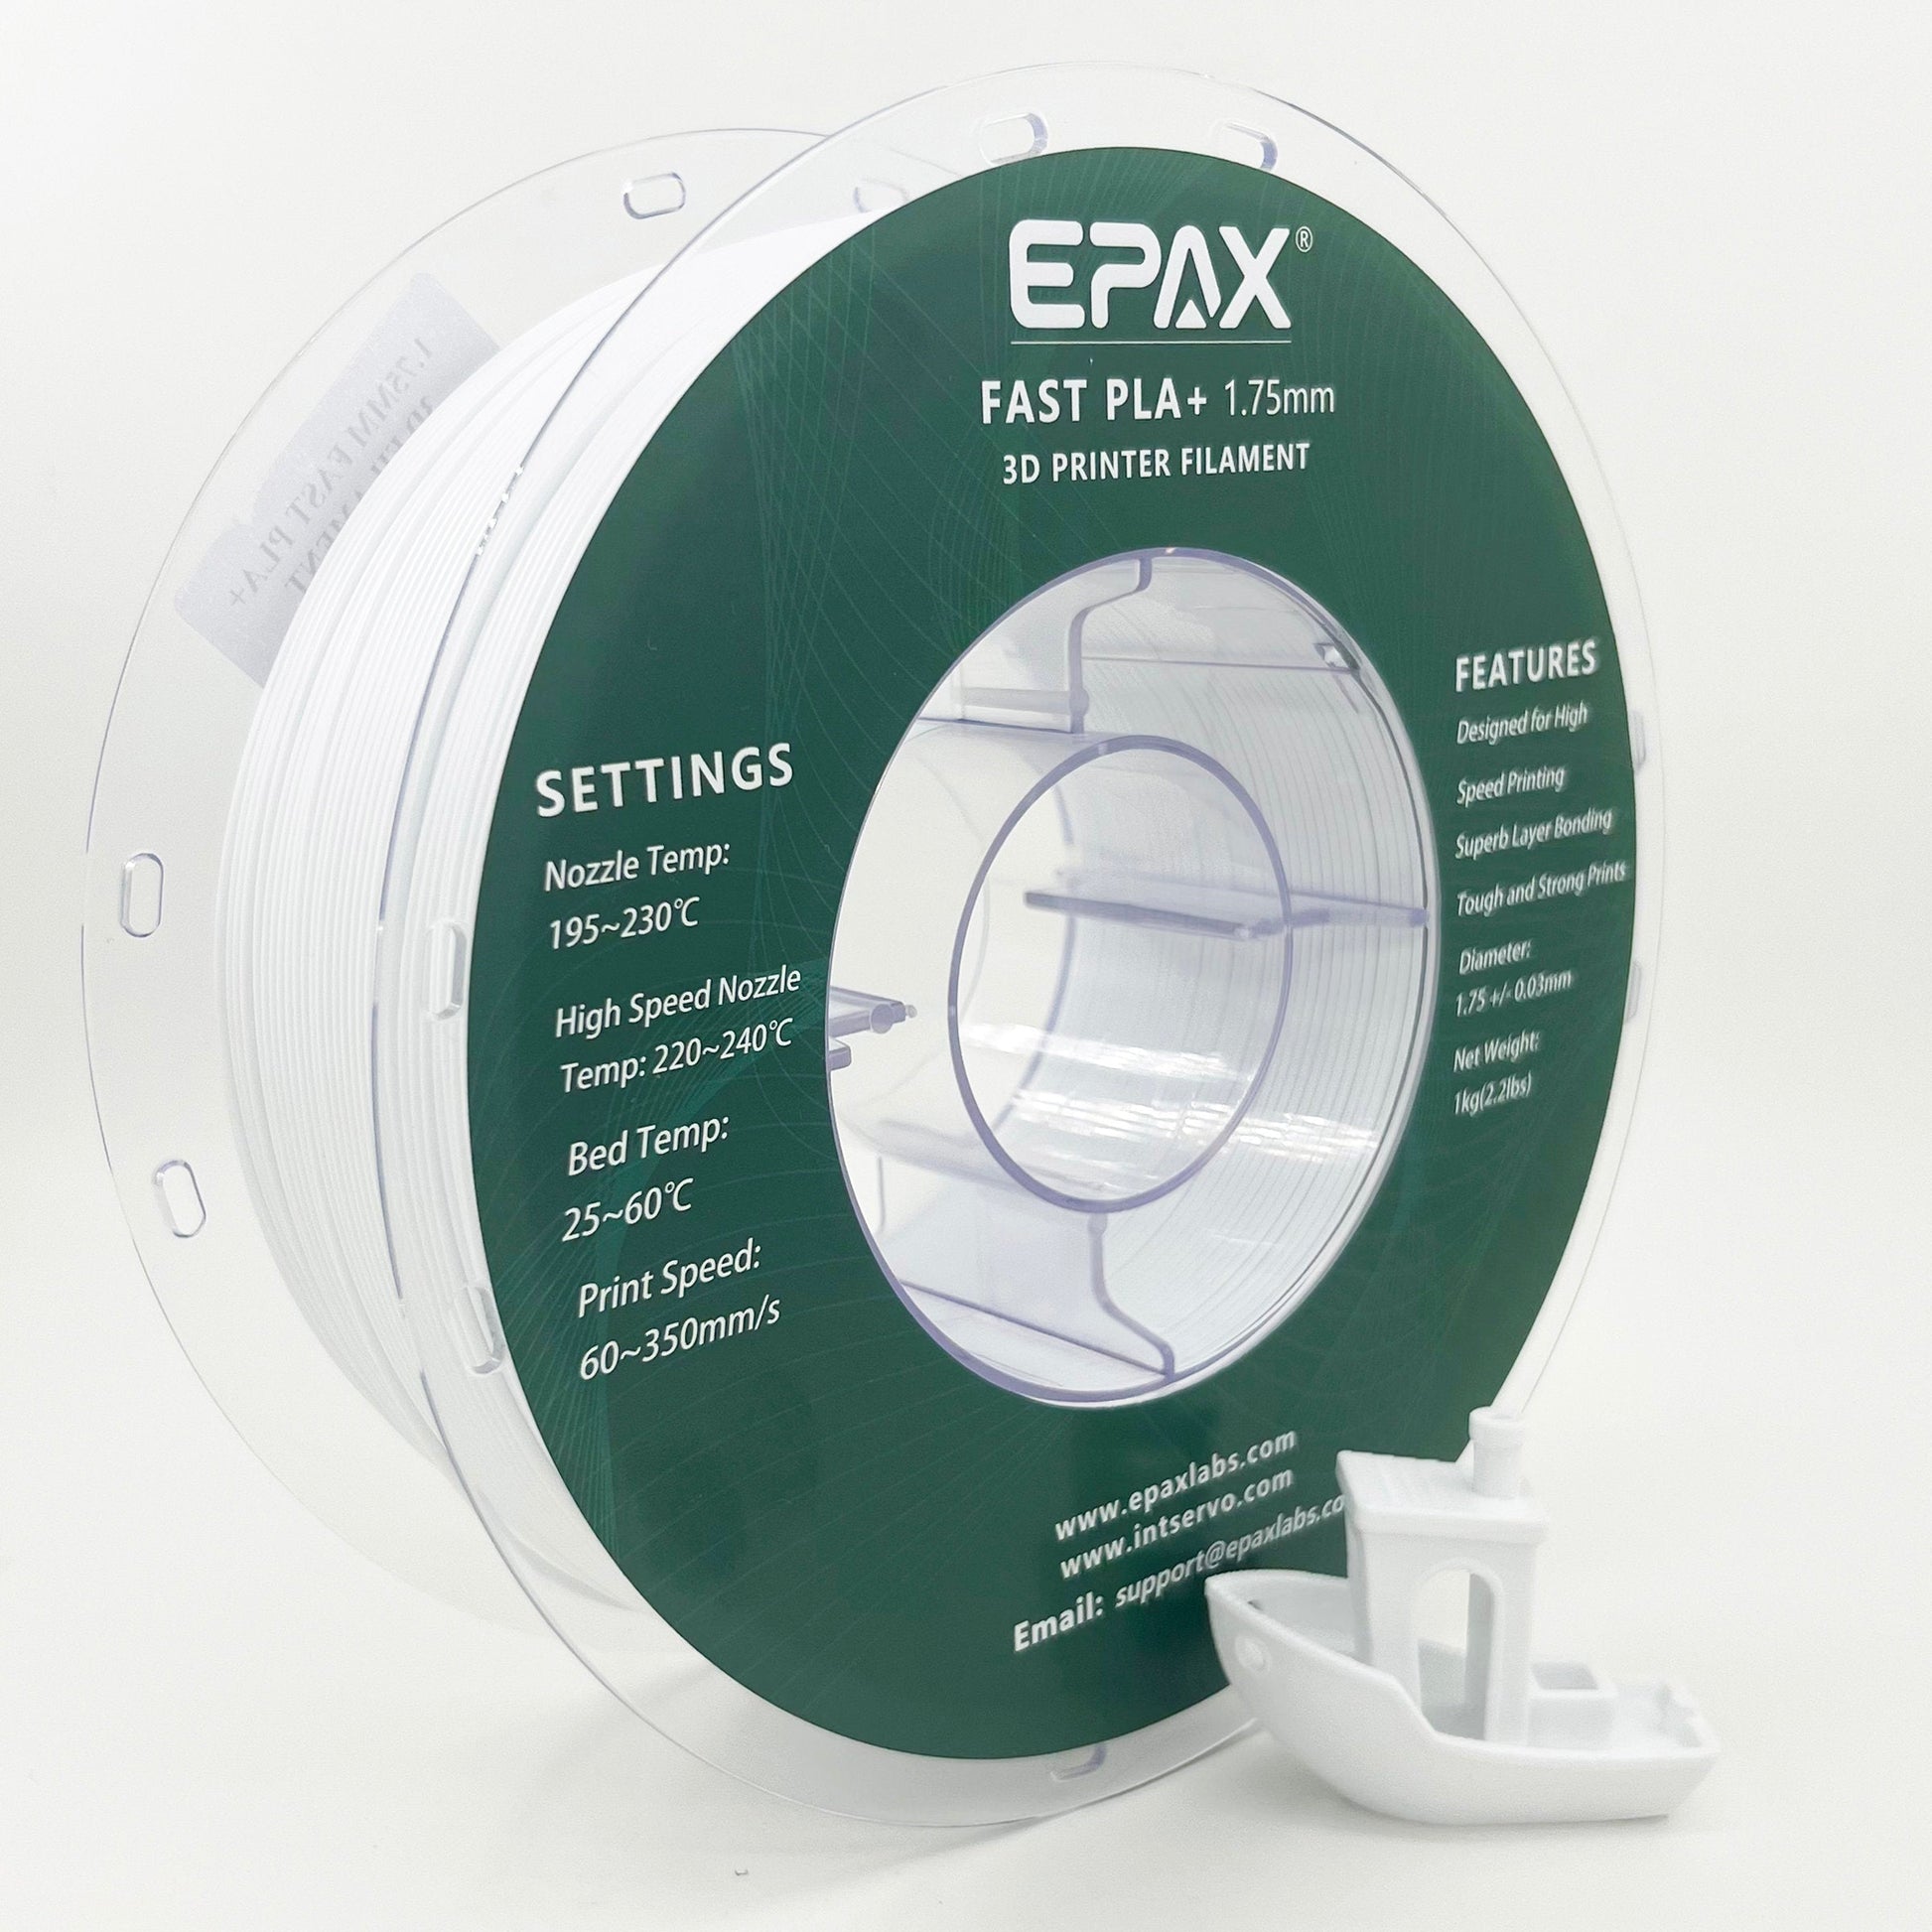 EPAX Fast PLA+ 3D Printer High Speed Filament, 1.75mm – INTSERVO 3D  Printing Store